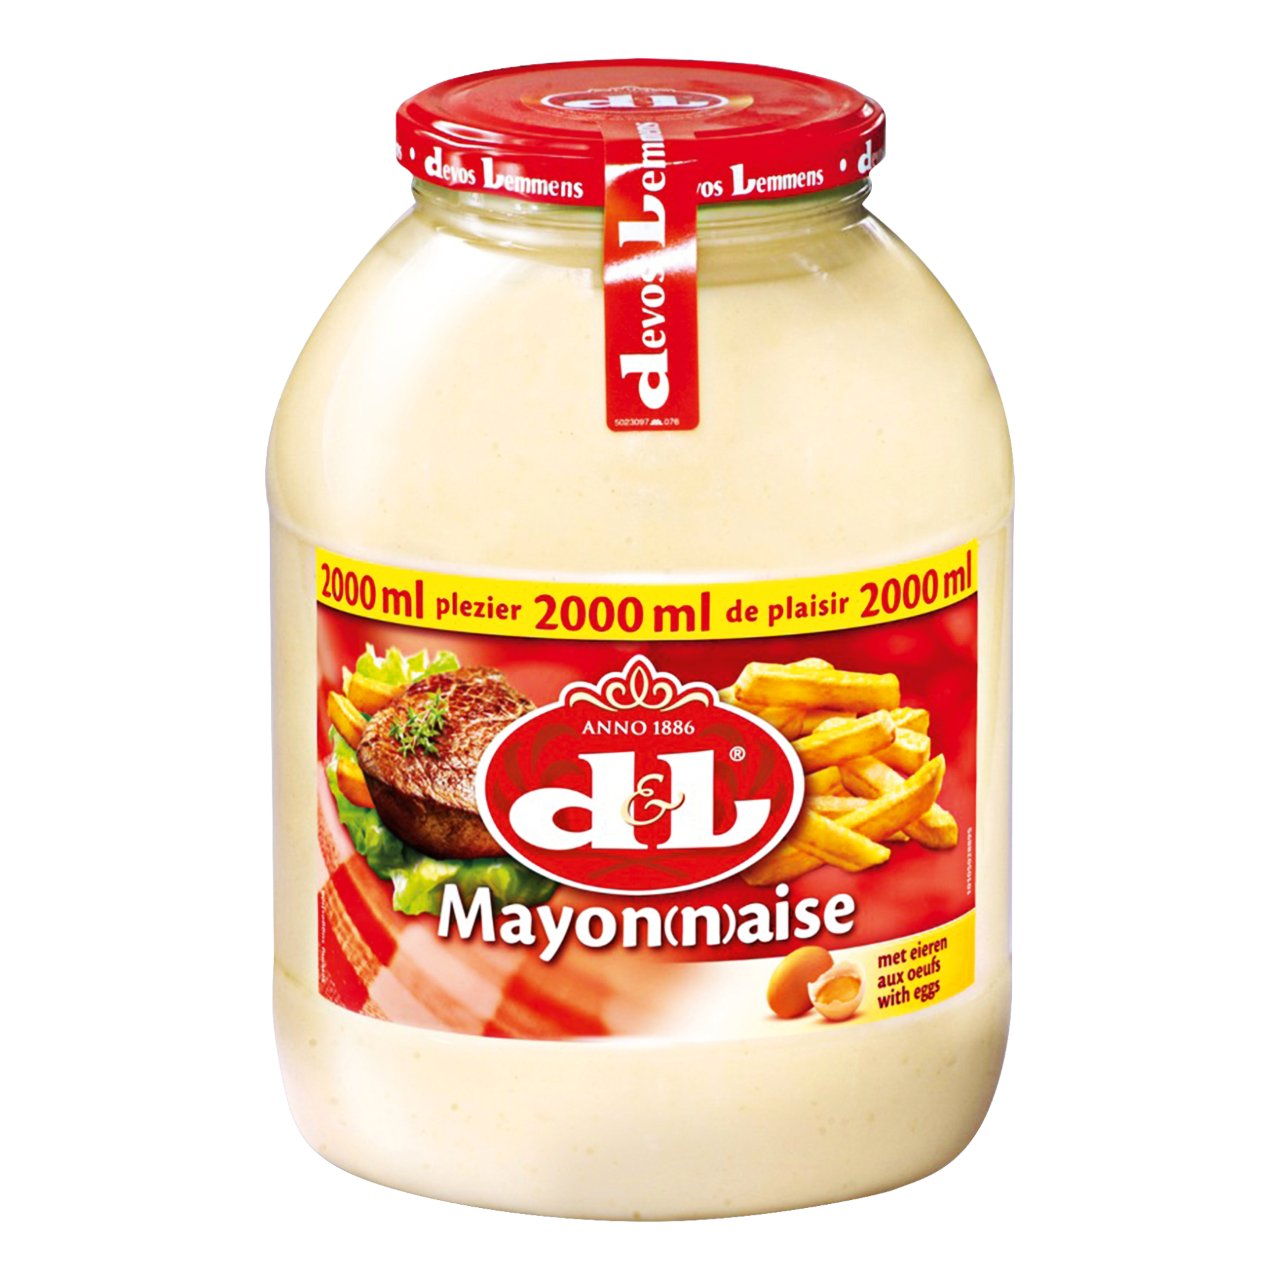 Devos &amp; Lemmens Mayonaise Pot 2 liter | Sligro.nl